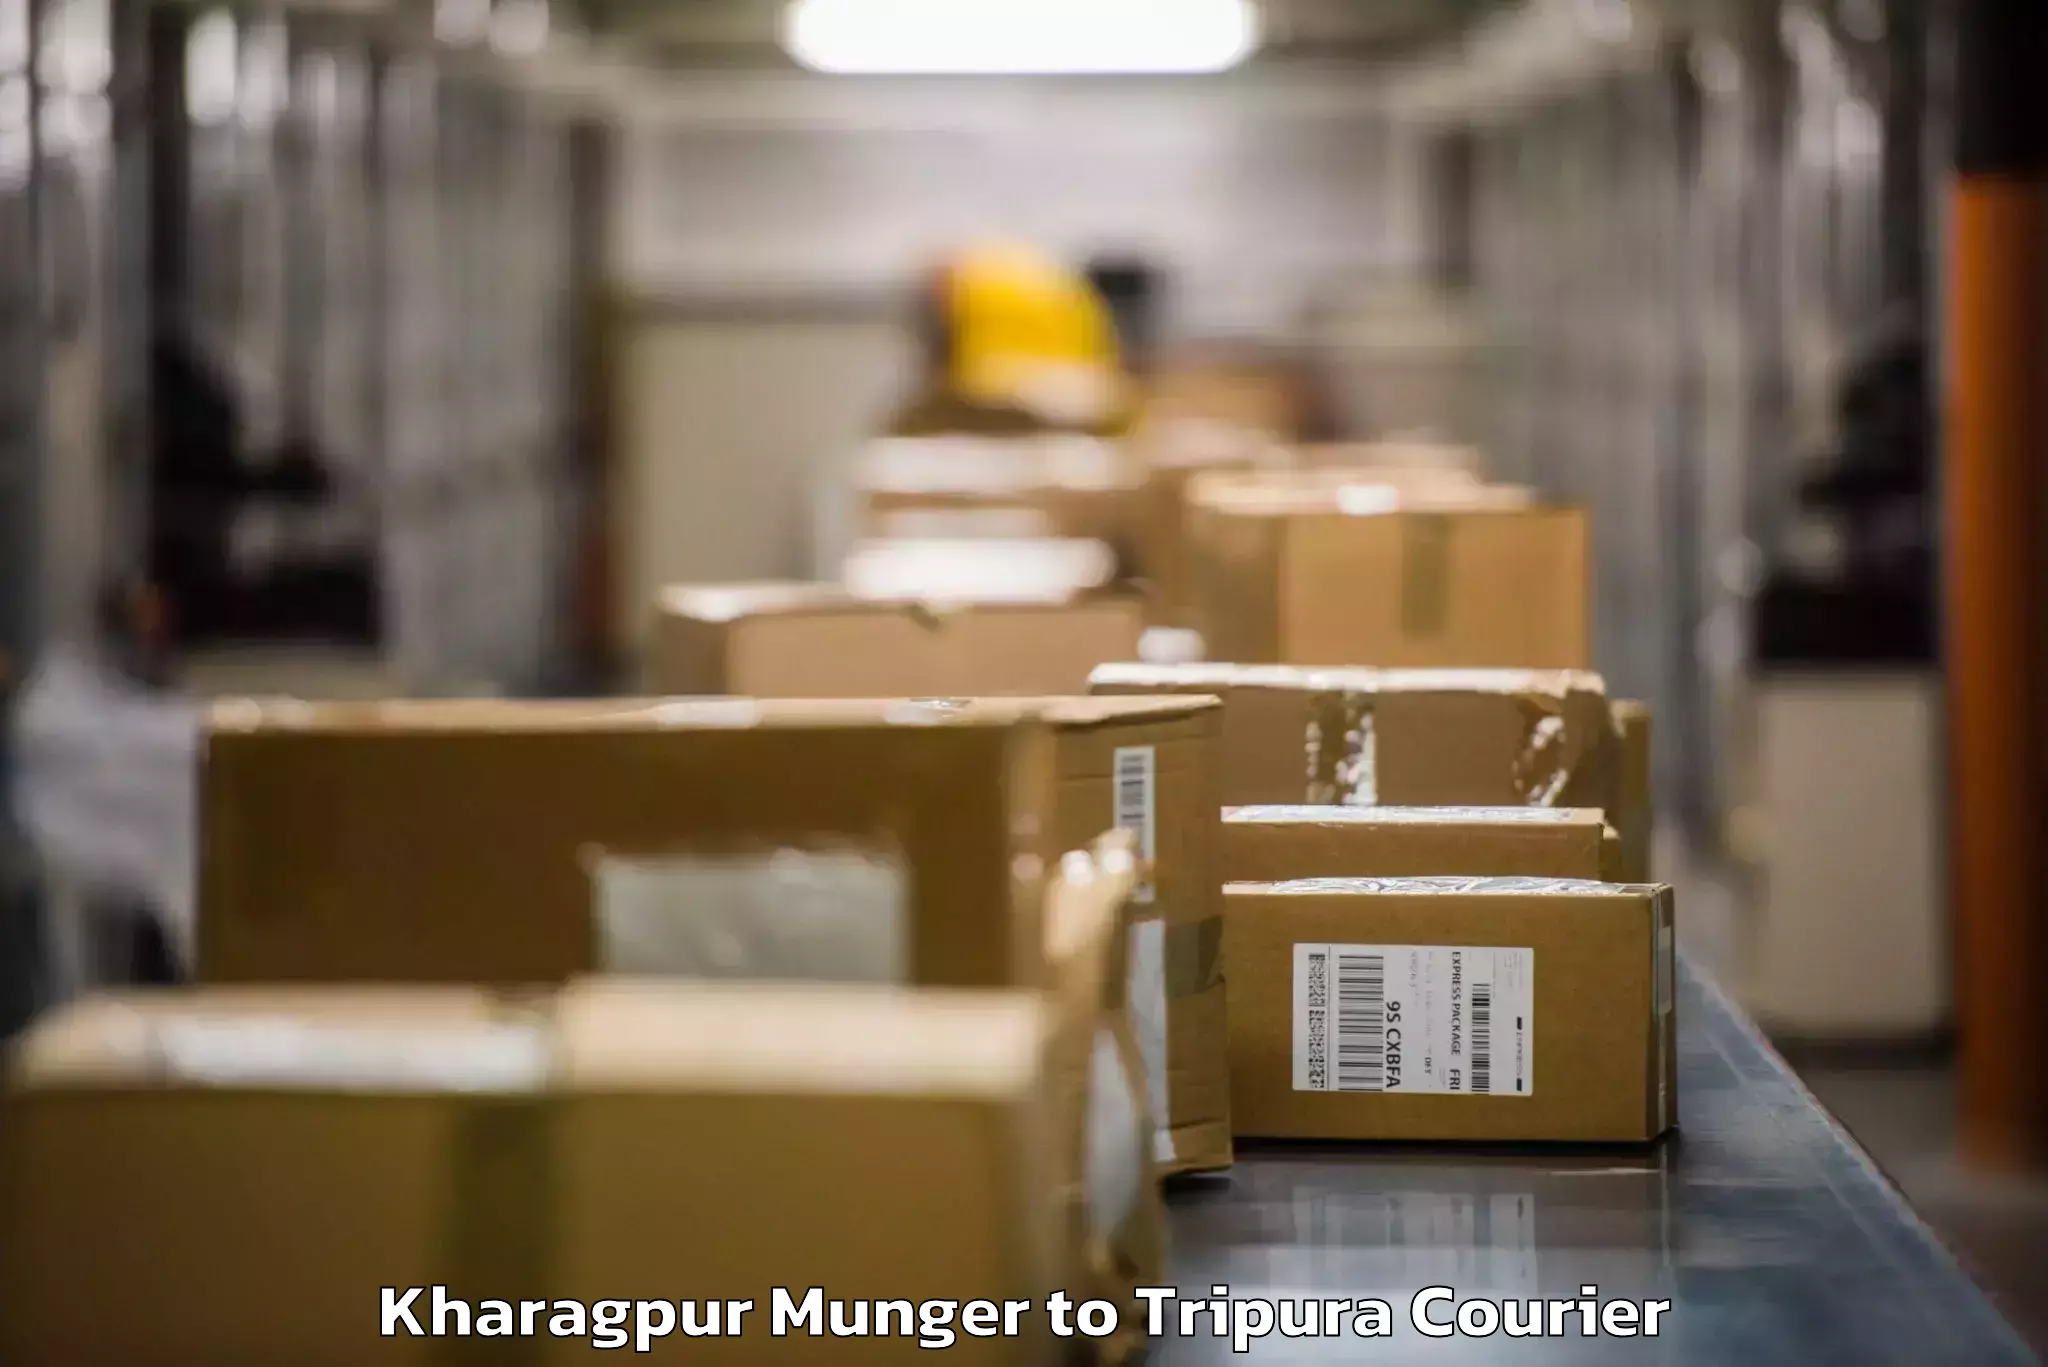 Baggage transport scheduler Kharagpur Munger to Agartala